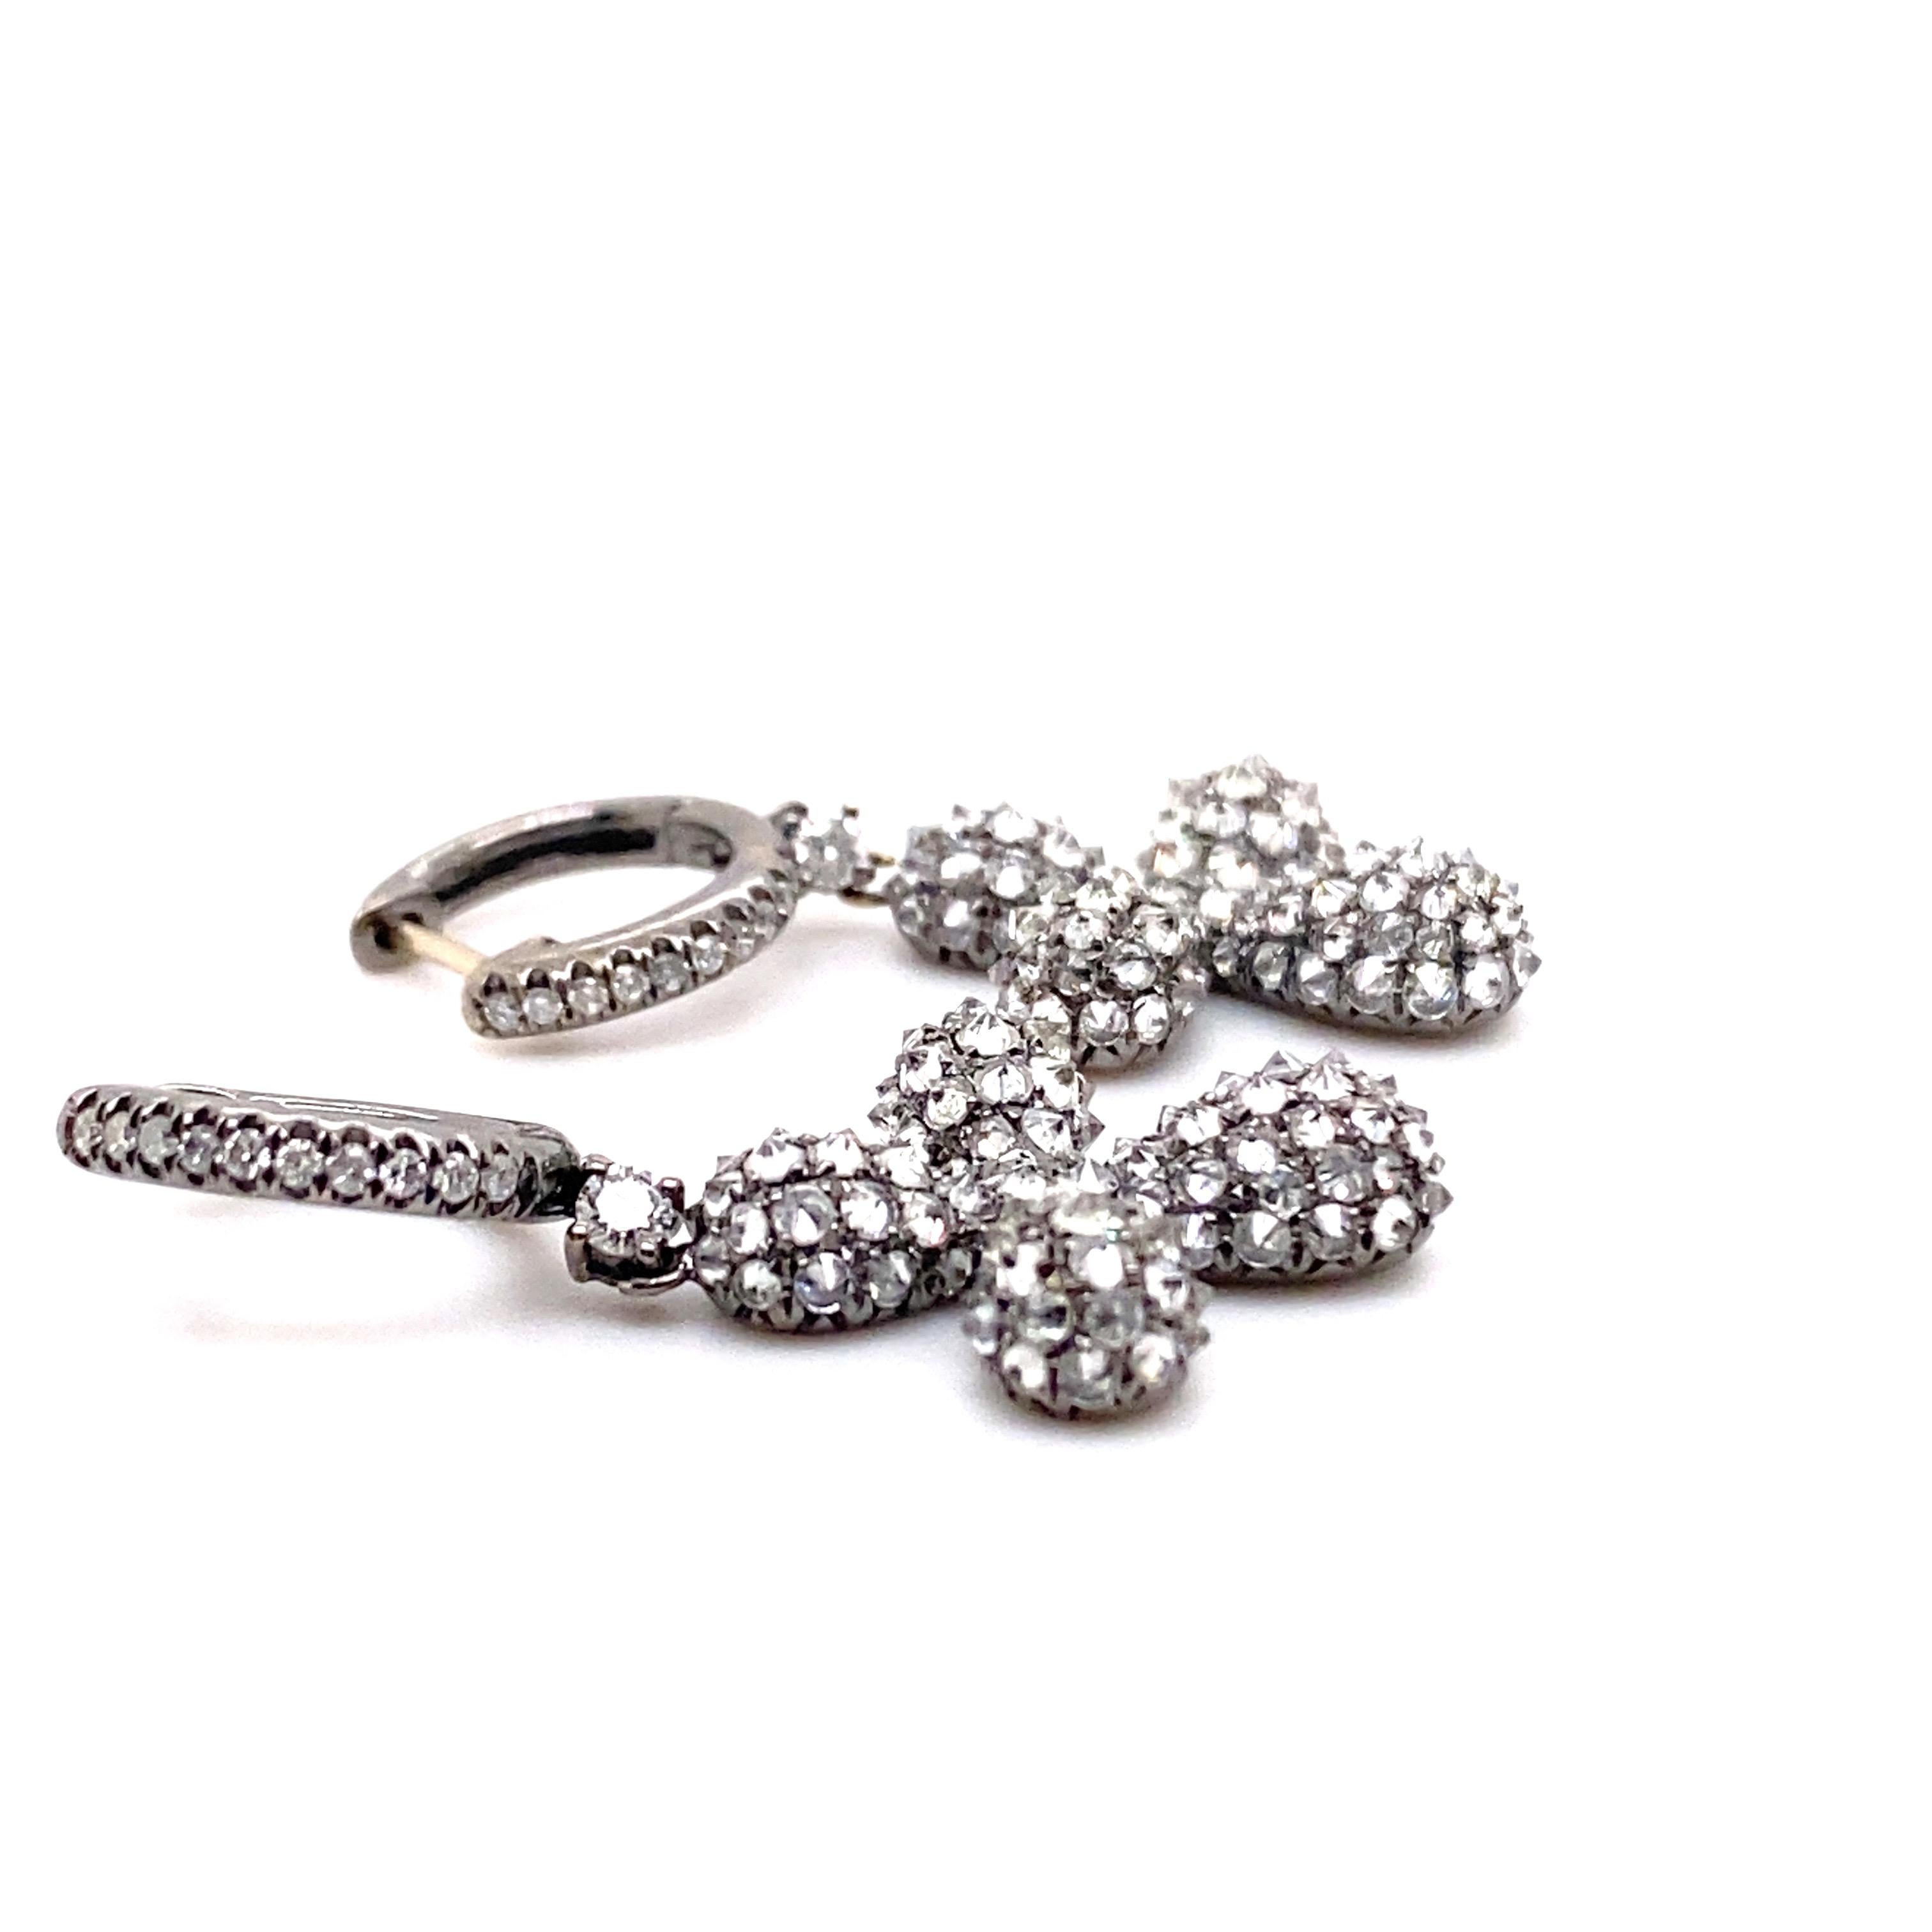 black diamond cross earrings